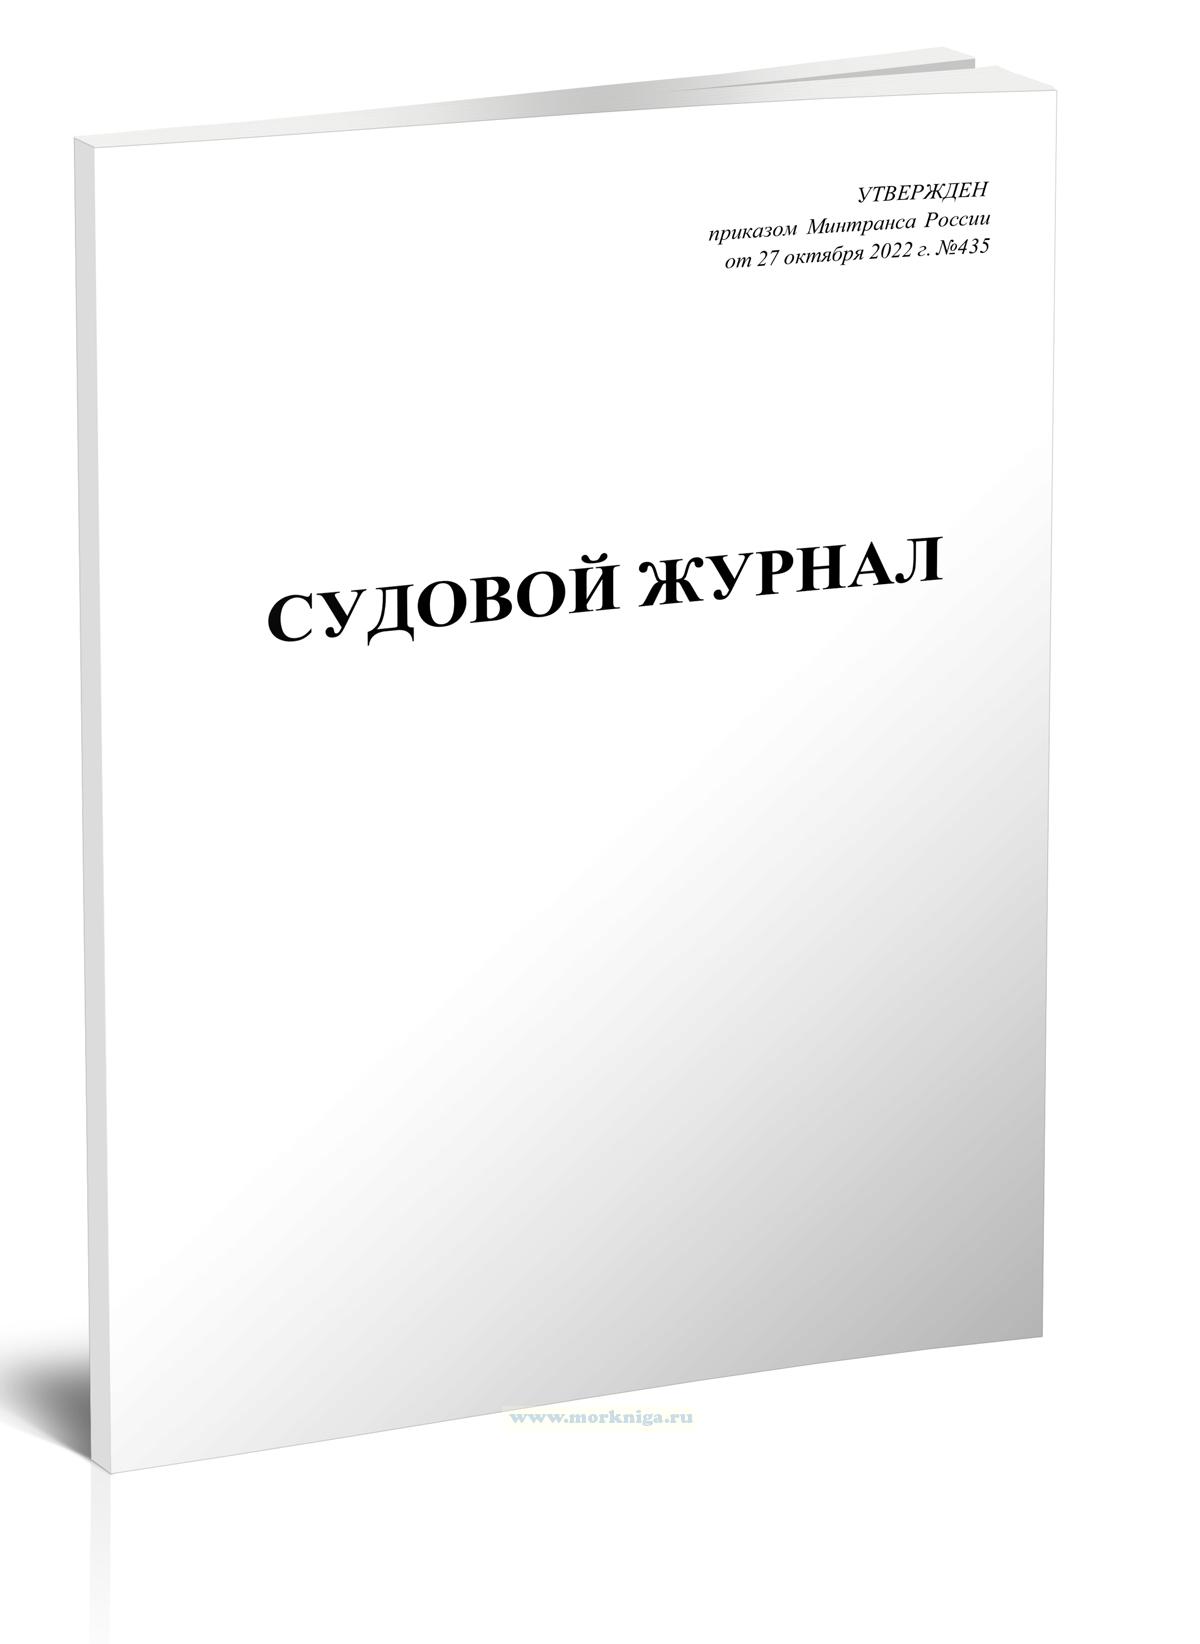 Судовой журнал (приказ Минтранса России от 27.10.2022 г. №435)